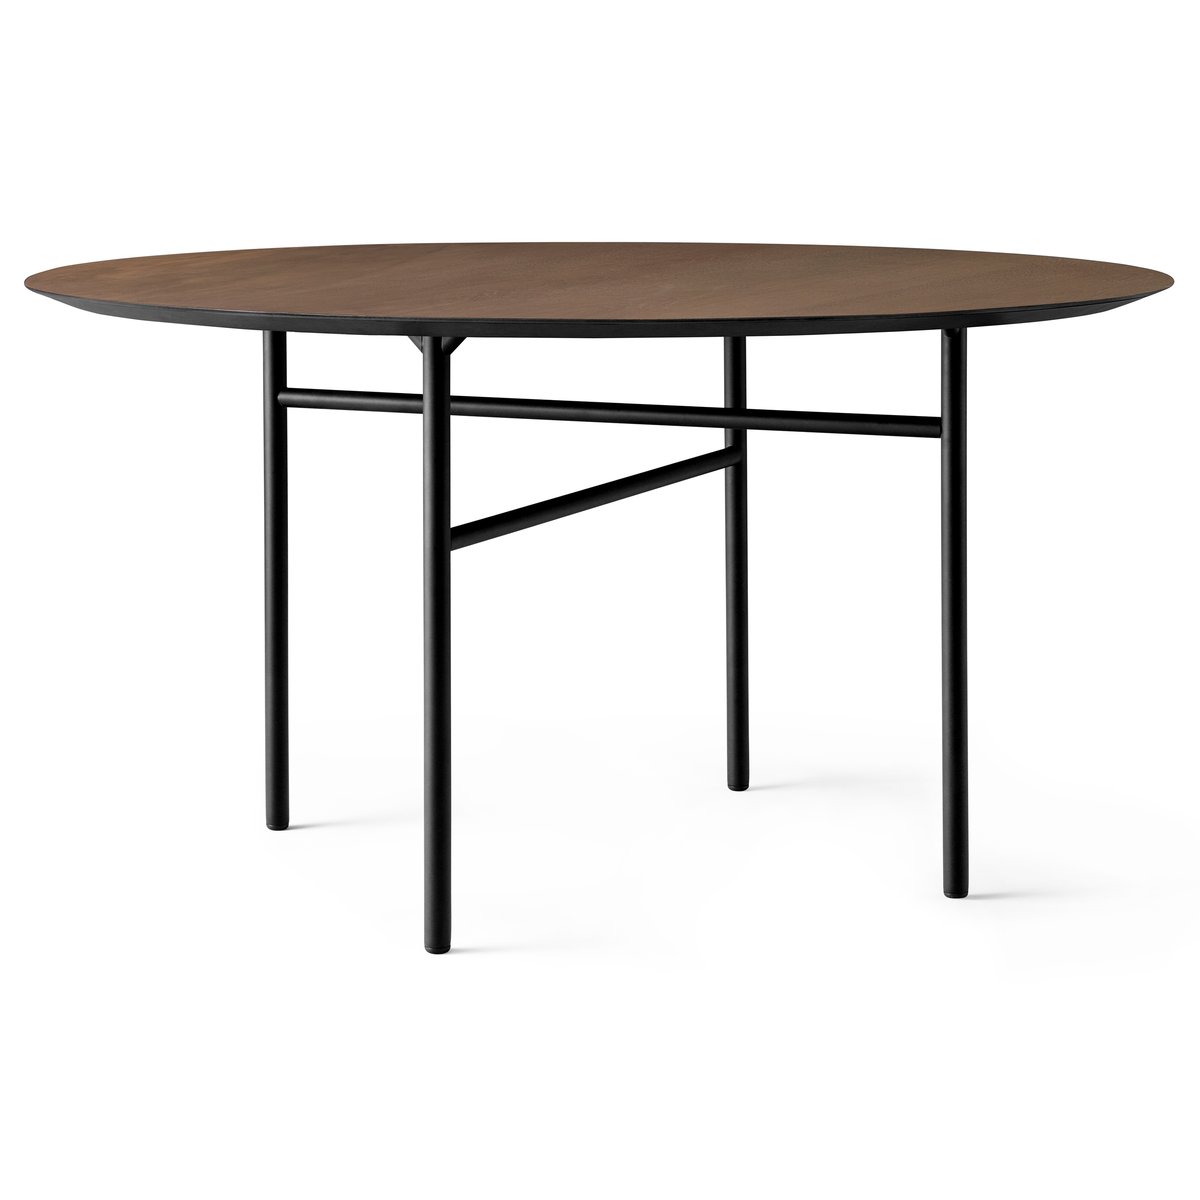 Audo Copenhagen Snaregade tafel rond Zwart-donkergebeitst eikenhout, Ø138 cm